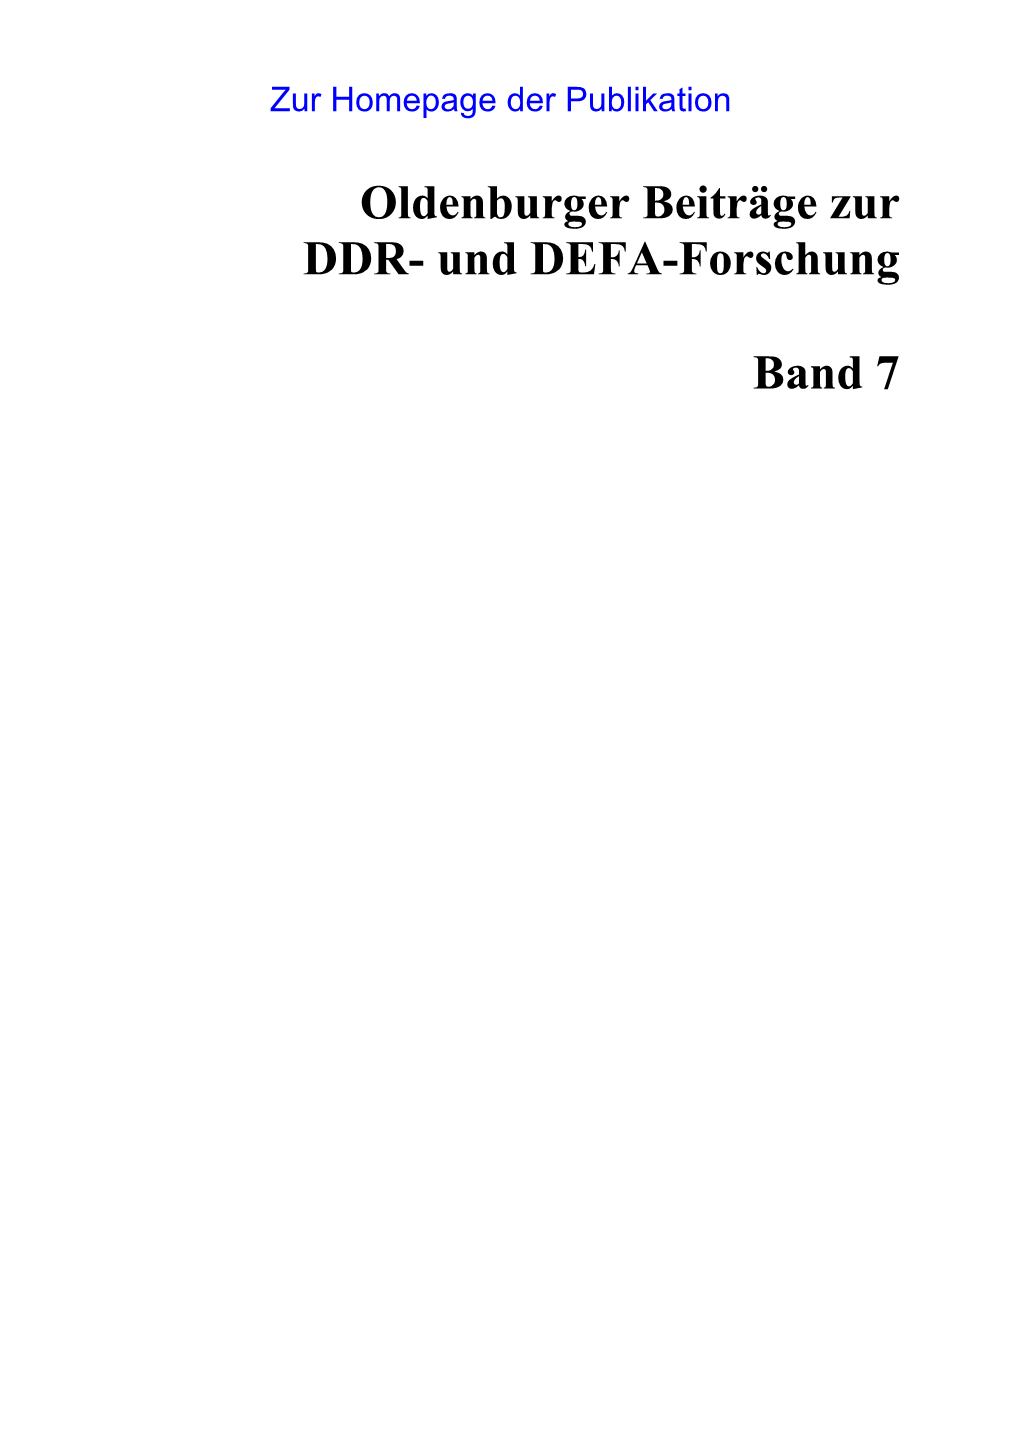 Oldenburger Beiträge Zur DDR- Und DEFA-Forschung Band 7